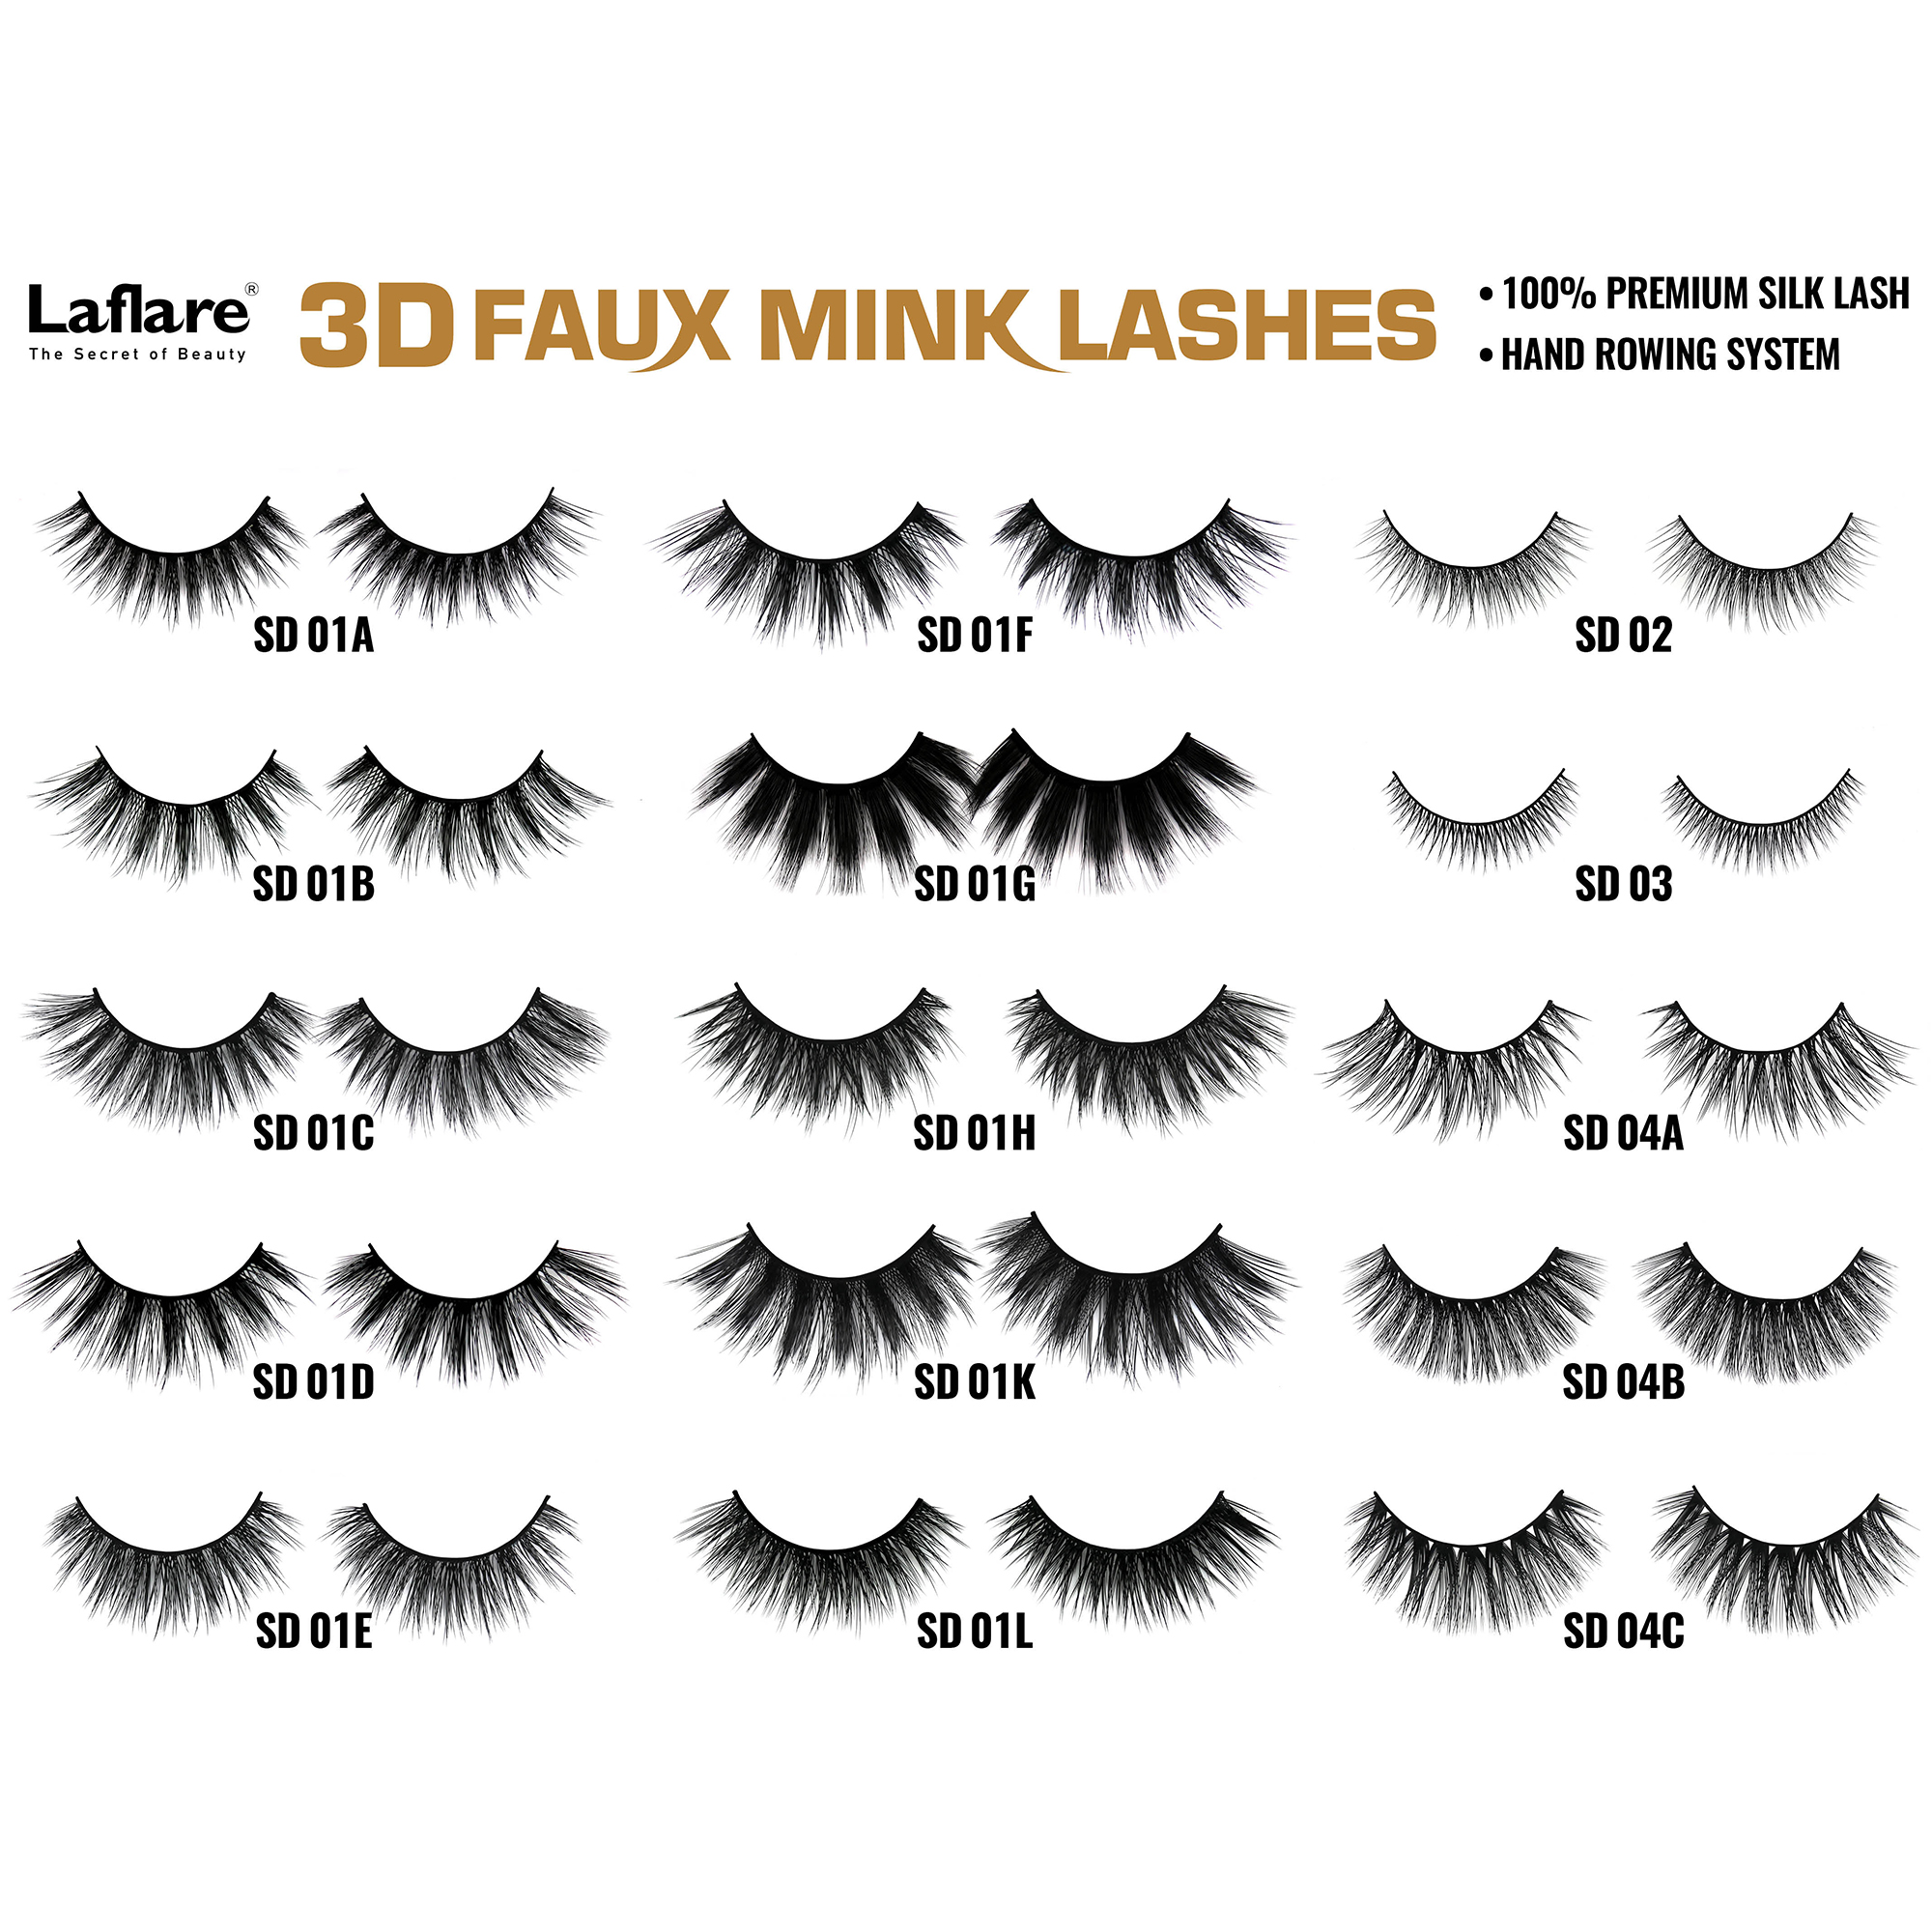 LAFLARE 3d Faux Mink Lashes - SD09A